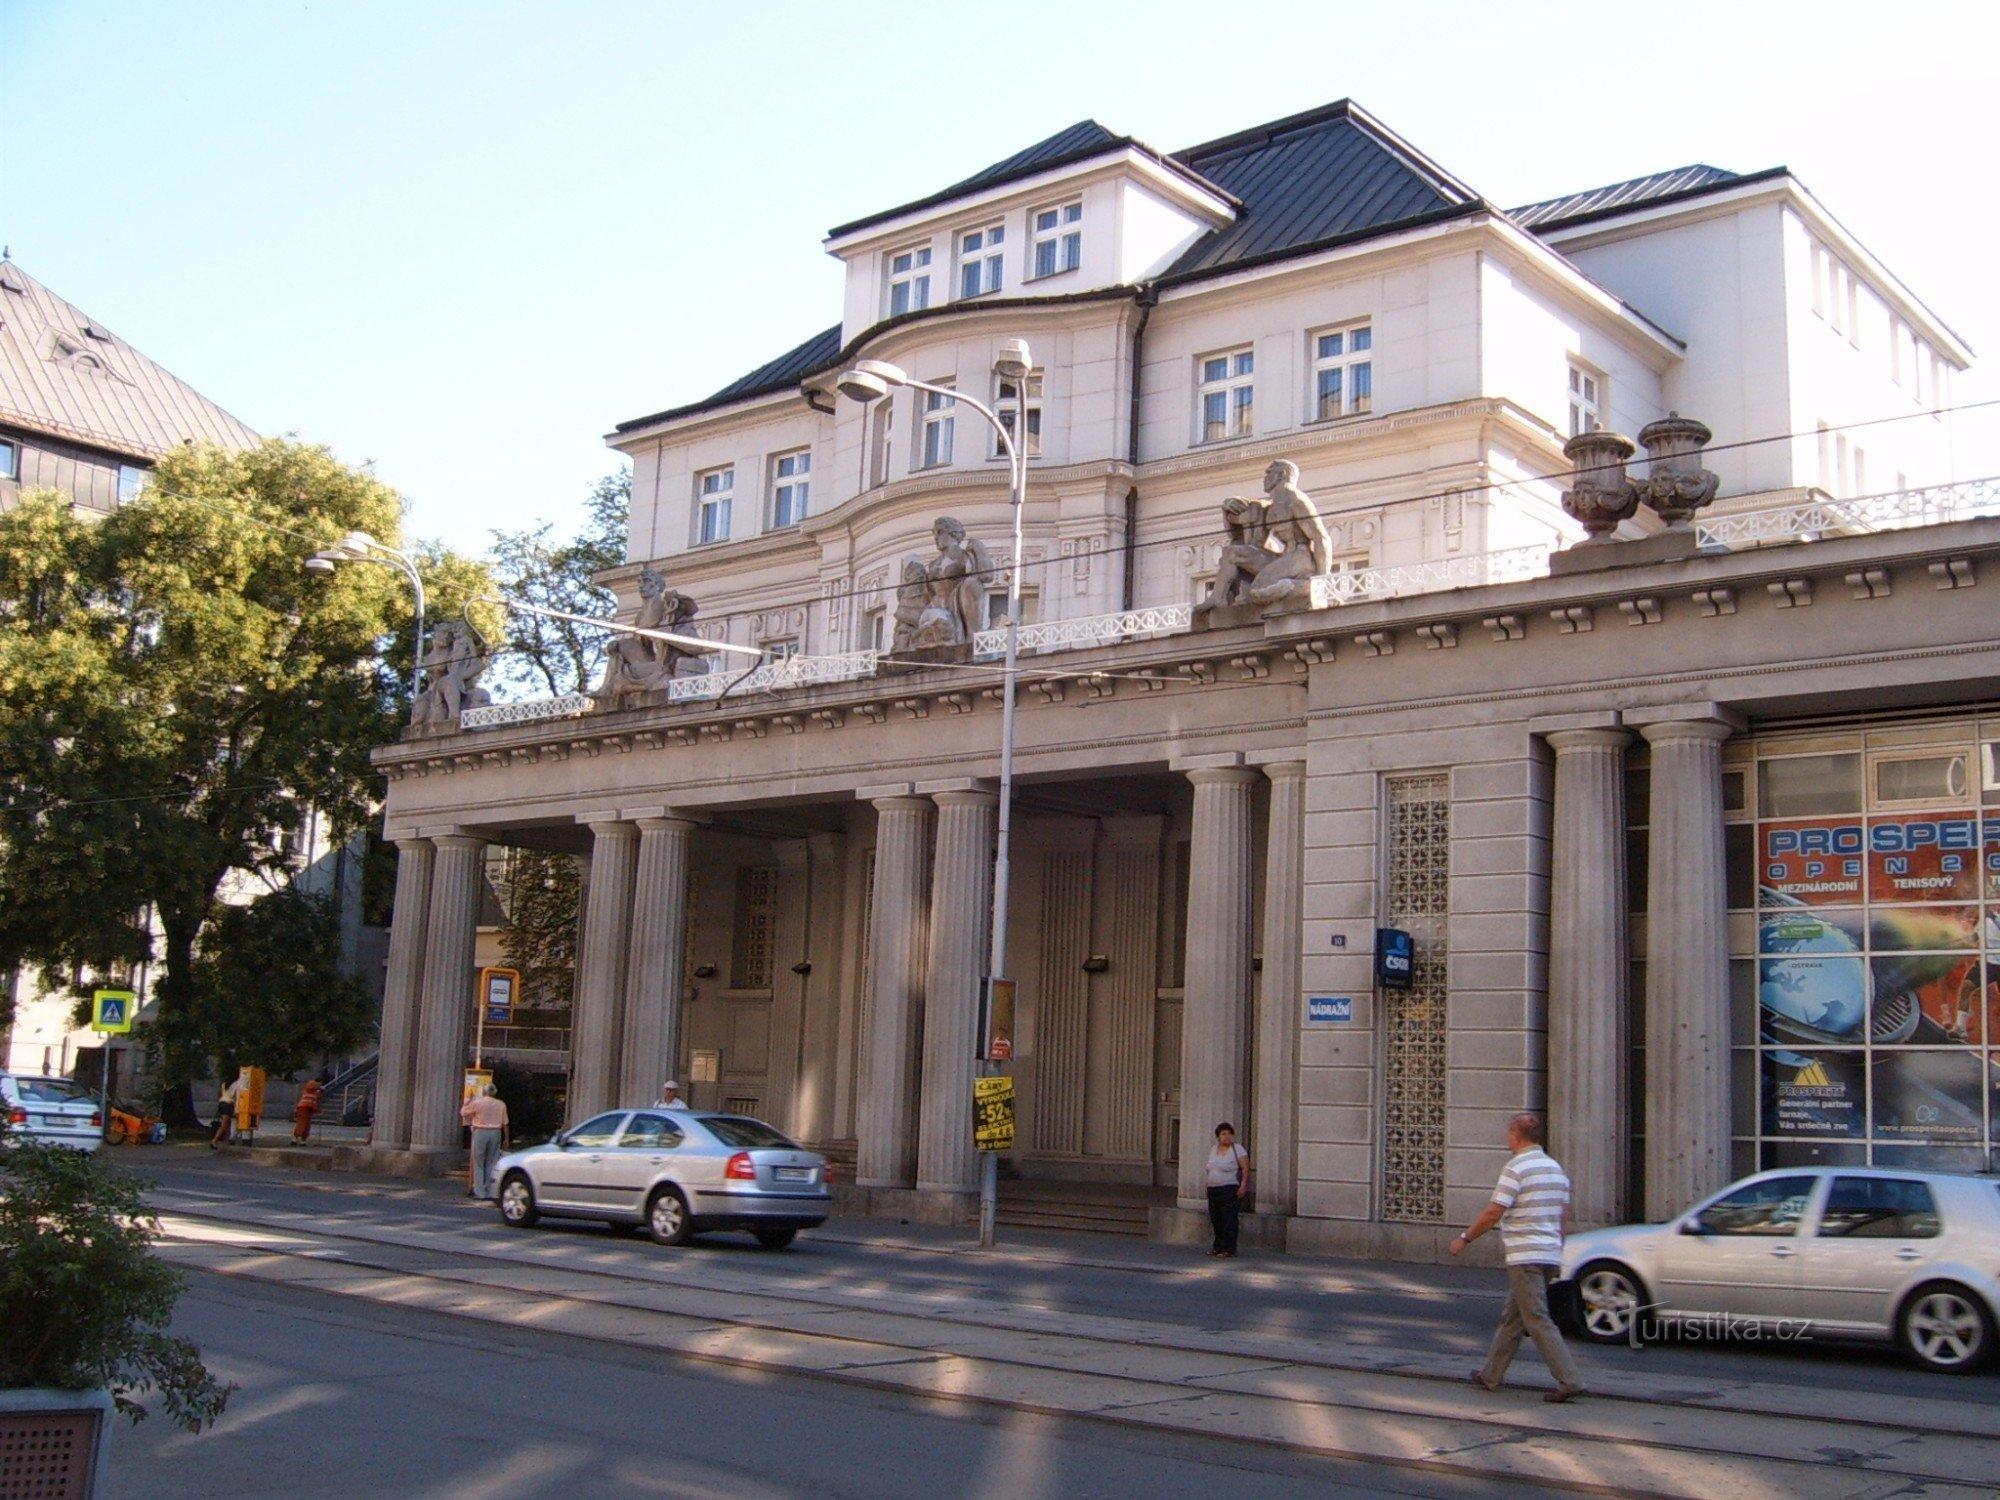 Ostrava - Villa de Kraus - ancienne banque de l'Union